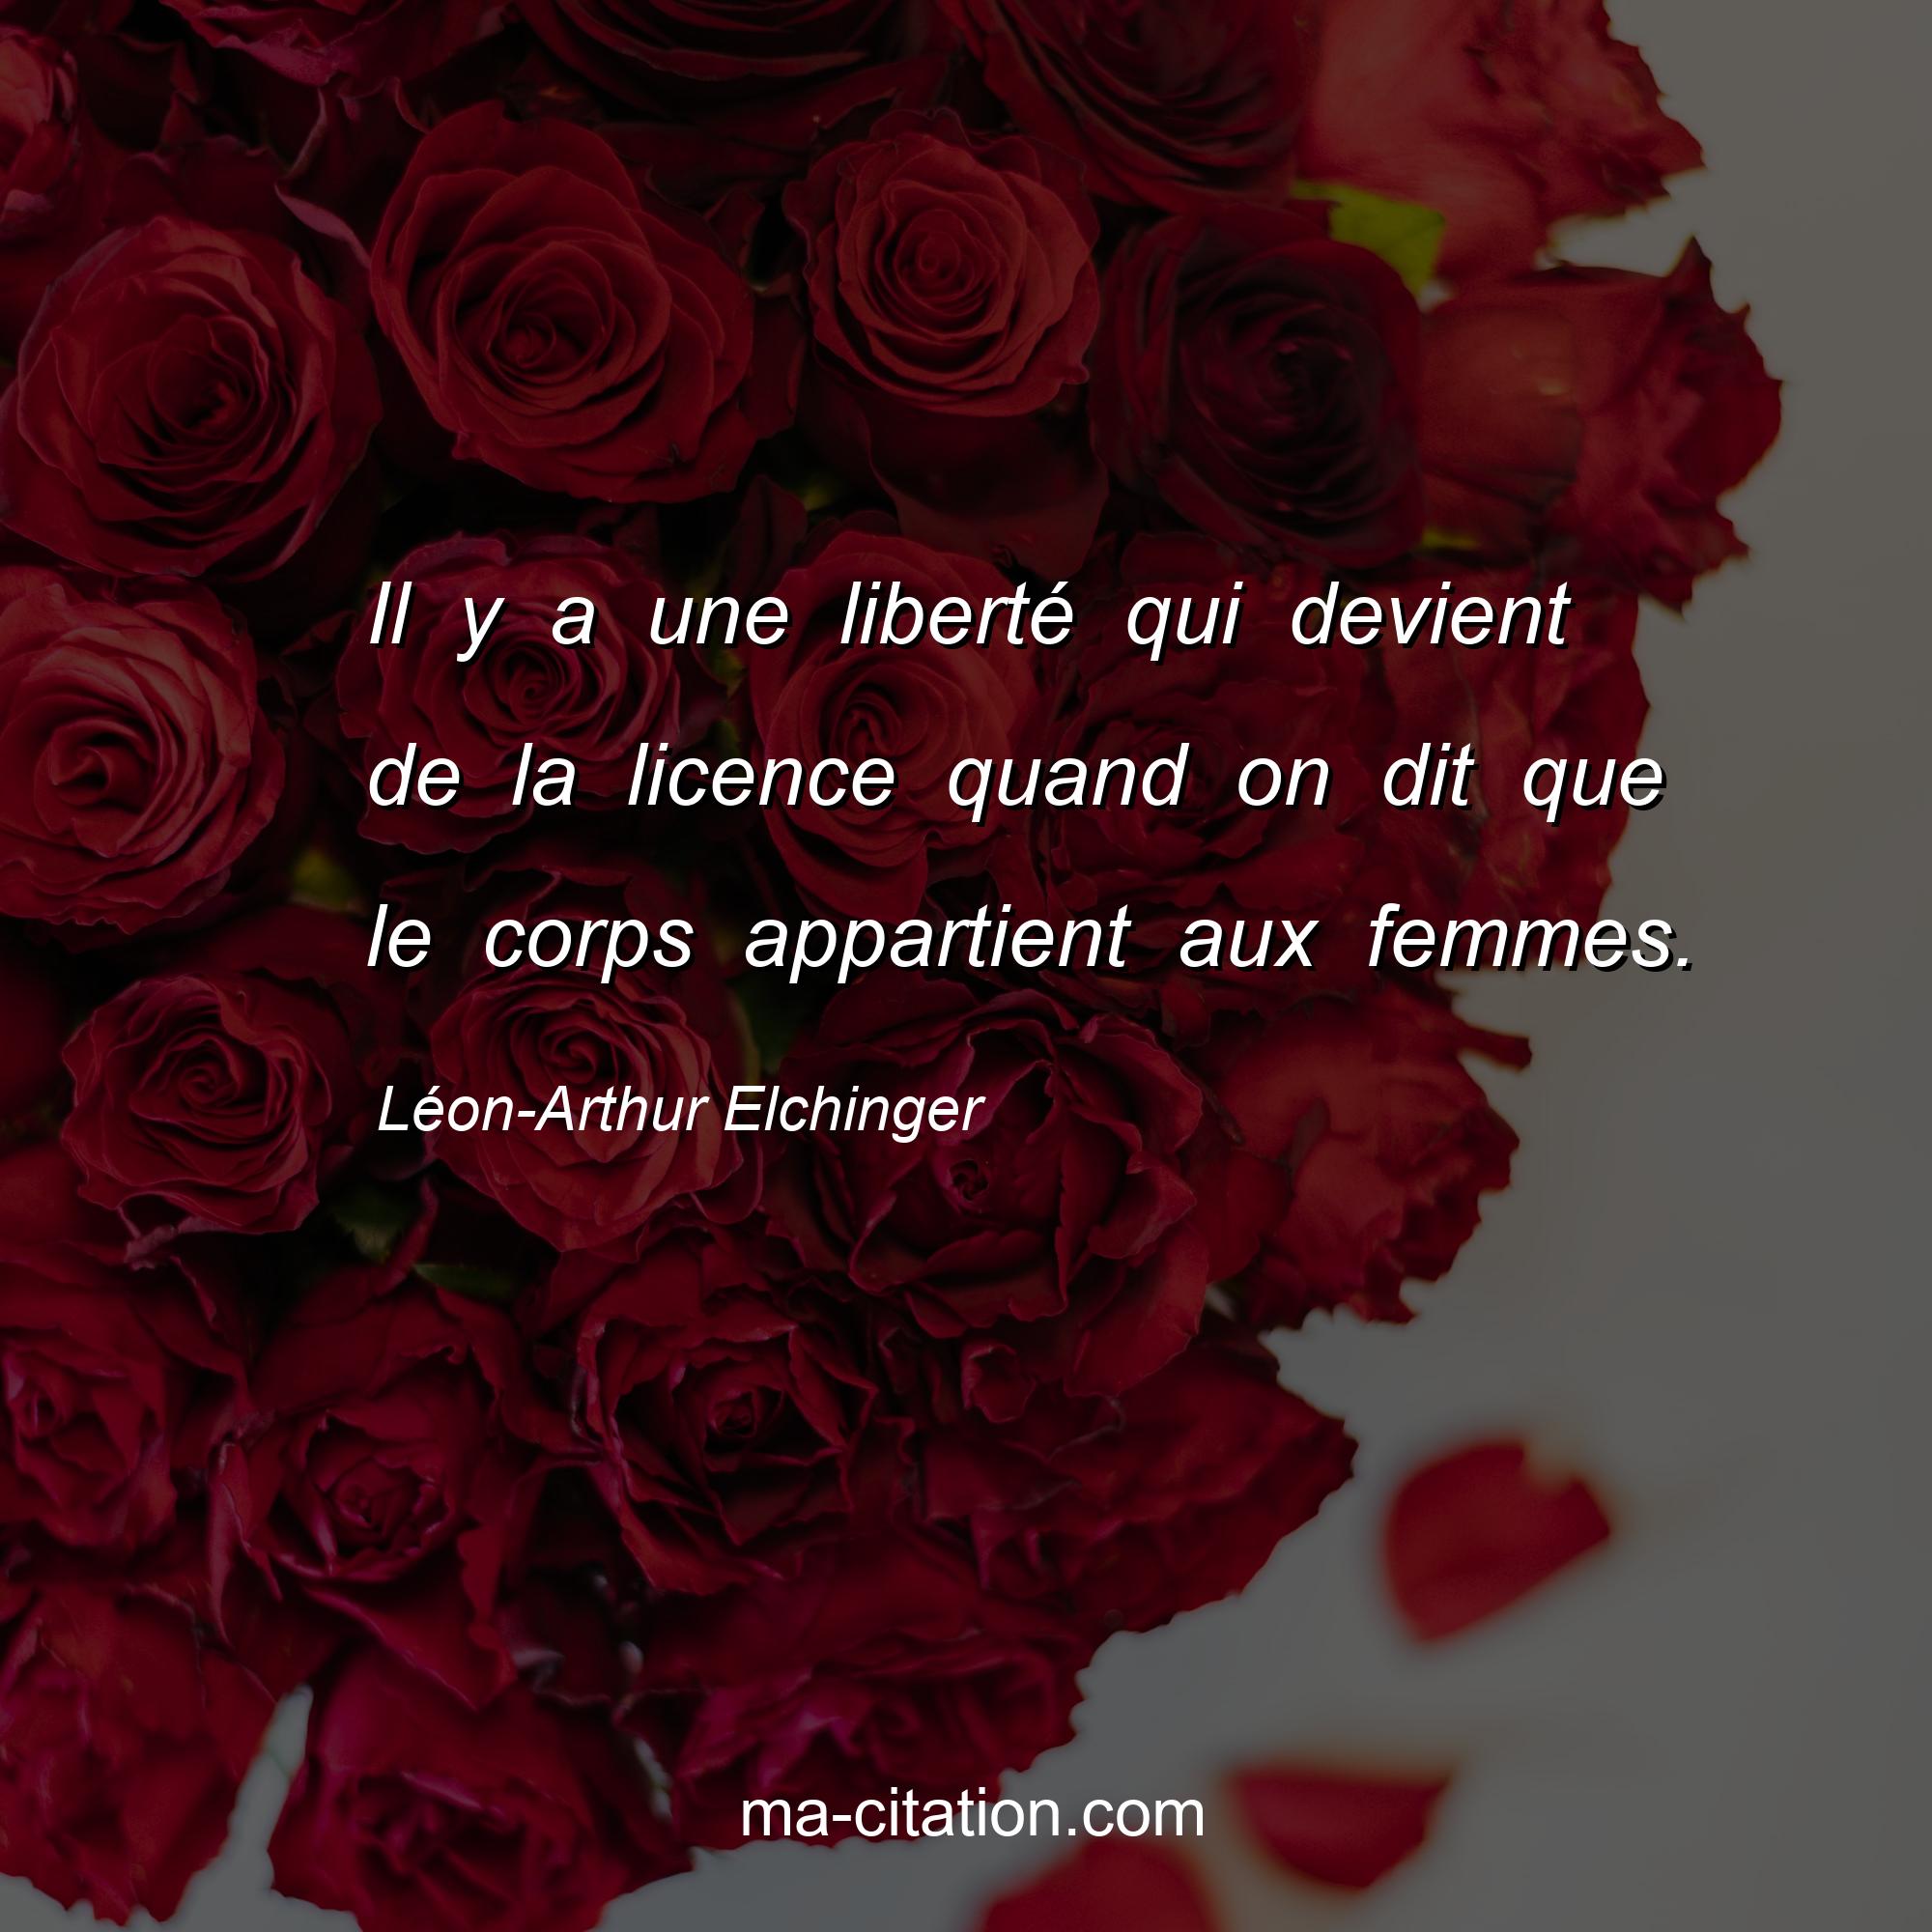 Léon-Arthur Elchinger : Il y a une liberté qui devient de la licence quand on dit que le corps appartient aux femmes.